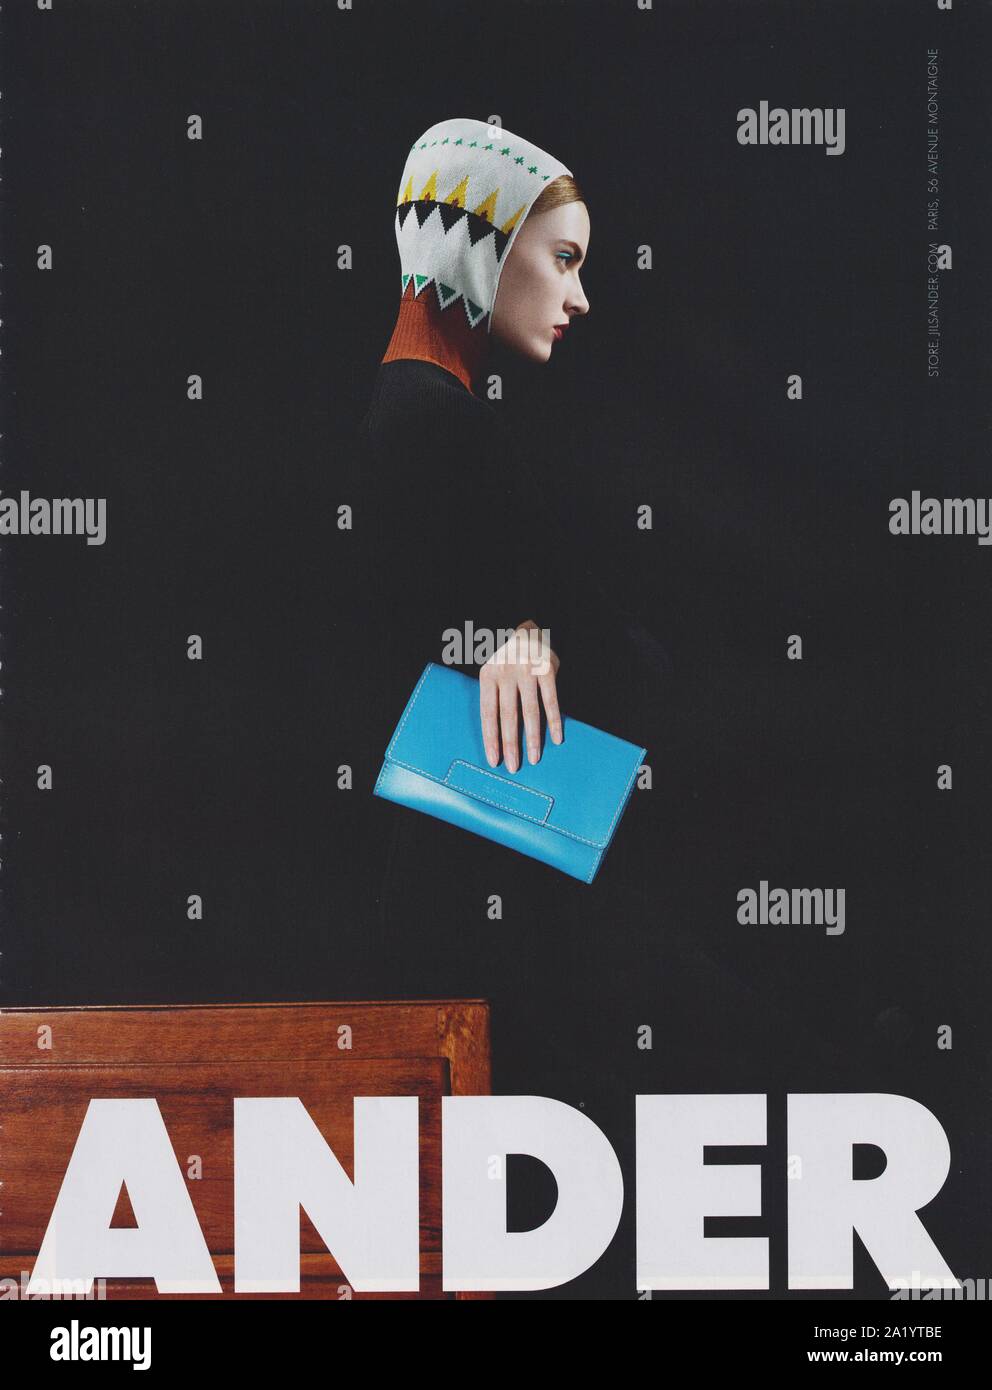 Plakat Werbung Jil Sander mit Daria Strokous in Papiermagazin aus dem Jahr  2011, Werbung, kreative Jil Sander Werbung aus 2010er Jahren  Stockfotografie - Alamy